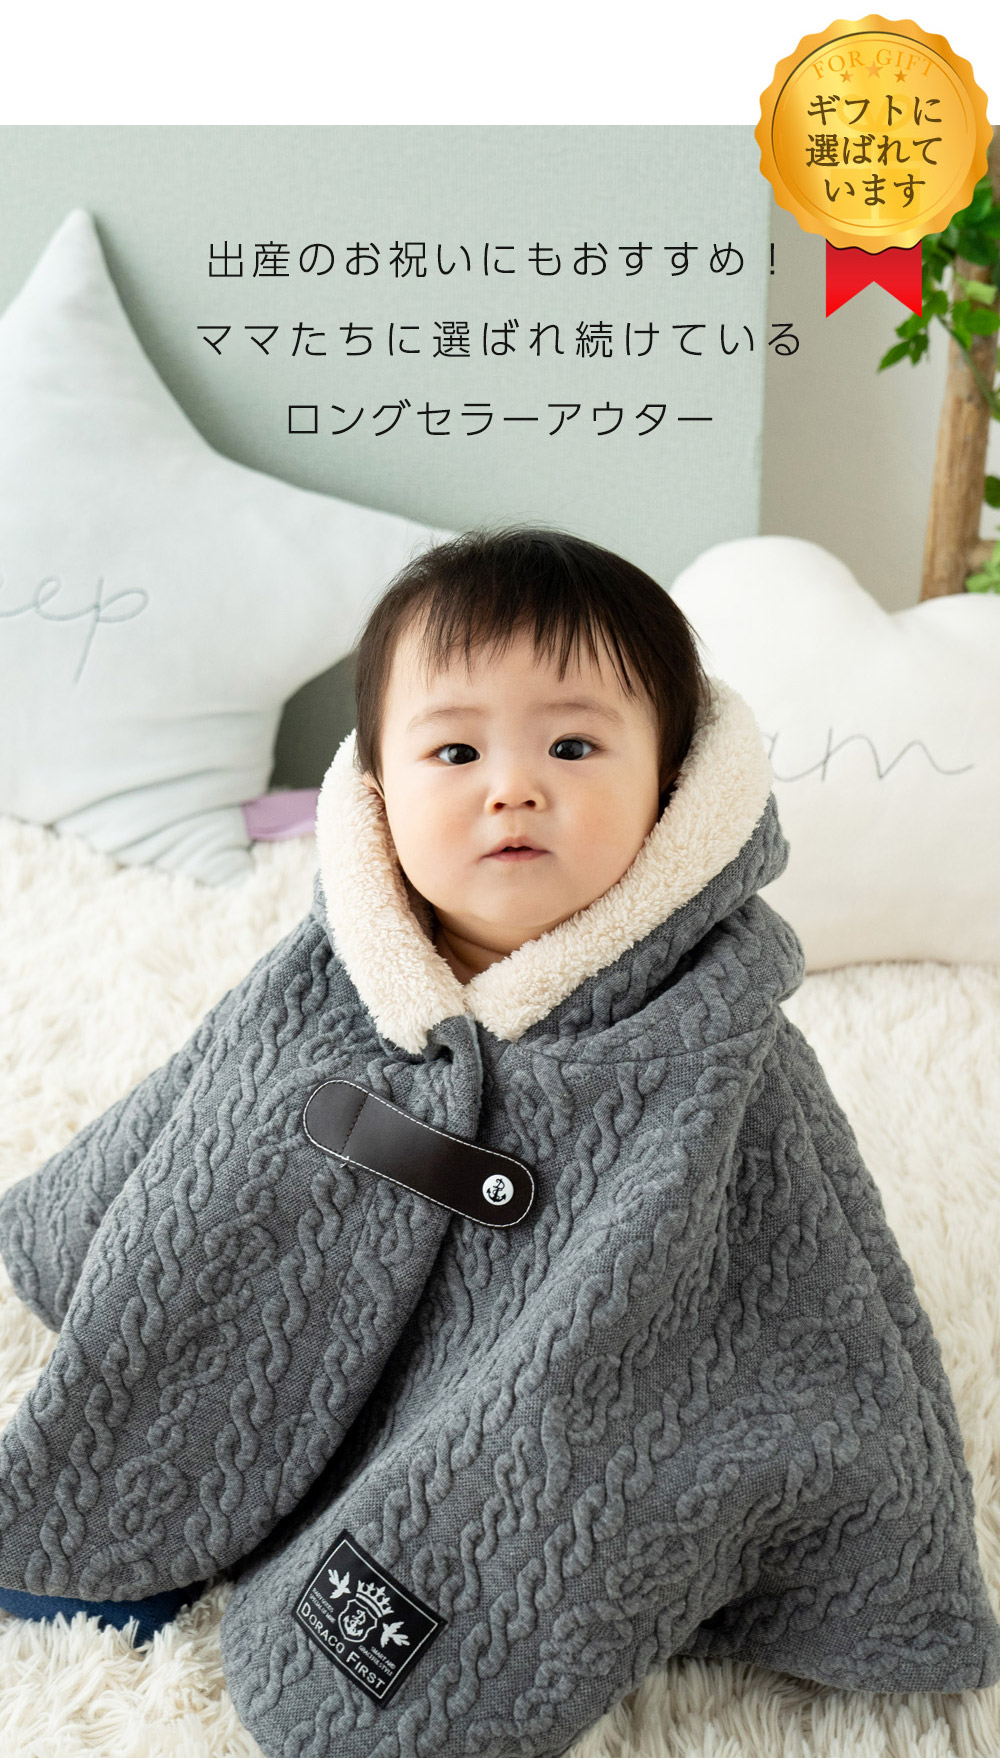 スリーパー キット 赤ちゃん 冬用 キッズ 秋 冬 長く 着られる 暖か 2way ■ 手作りキット ベビー 子供 こども ■